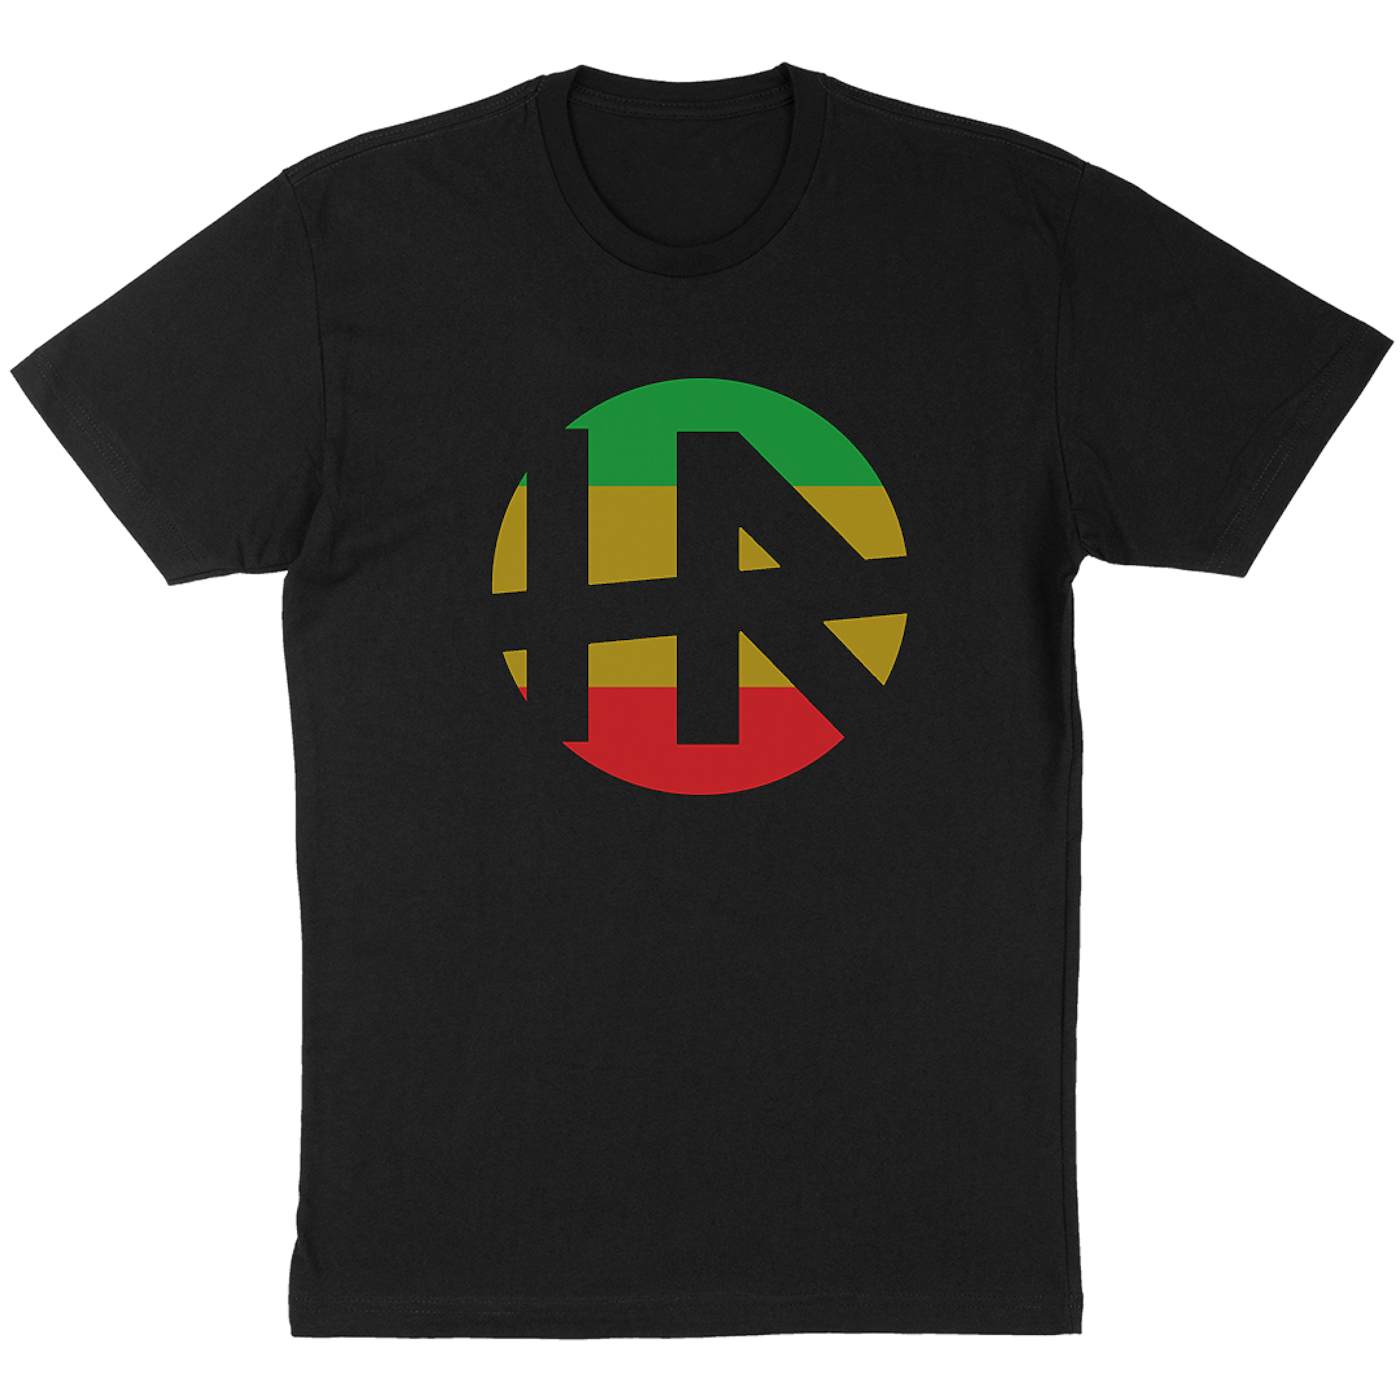 H.R. "Rasta Logo" T-Shirt